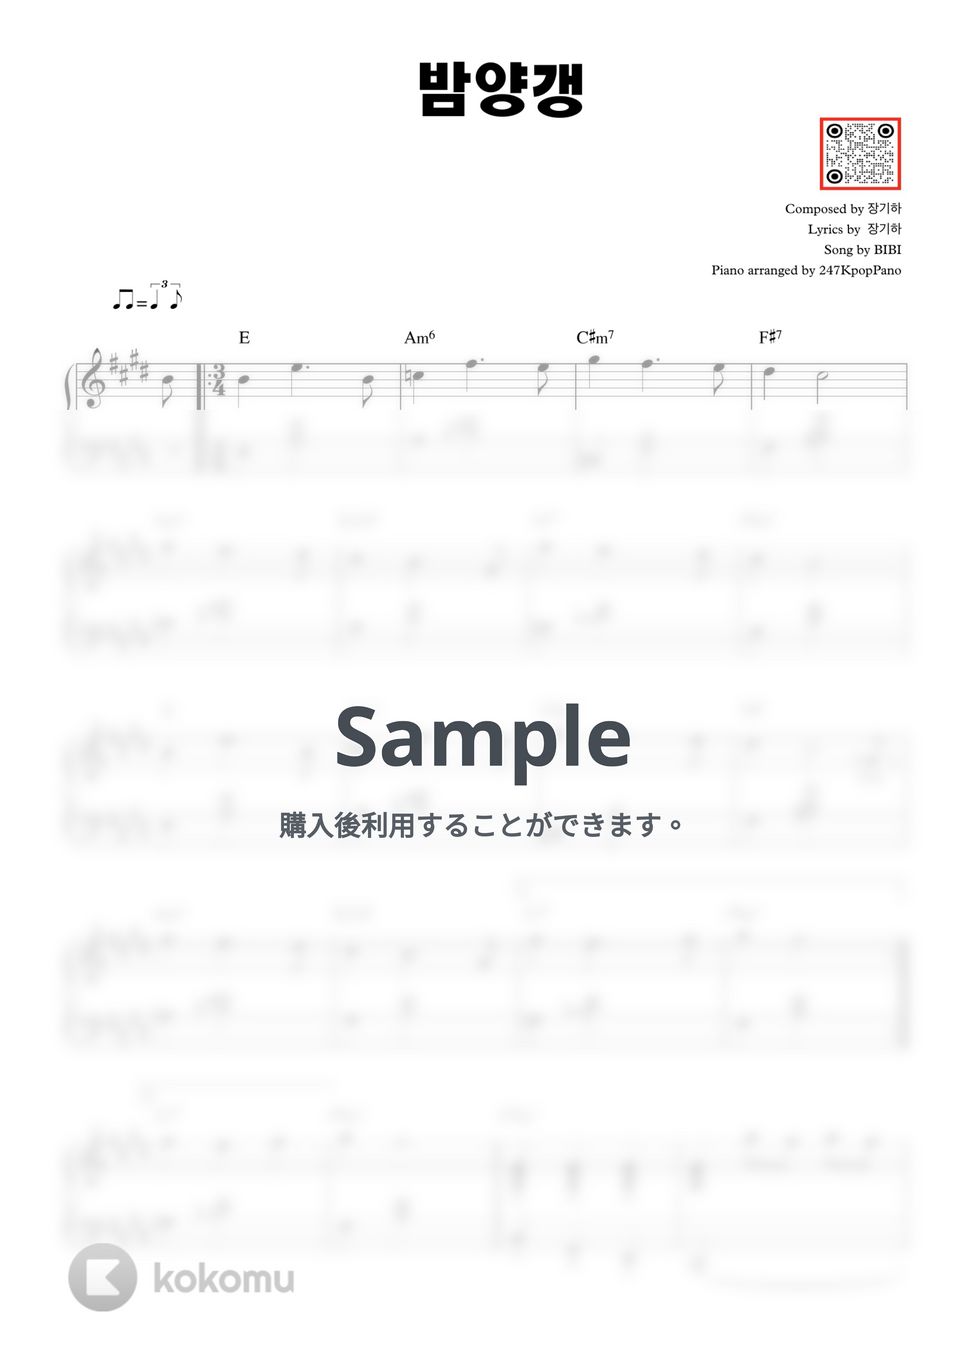 BIBI - Bam Yang Gang by 247 Kpop Piano